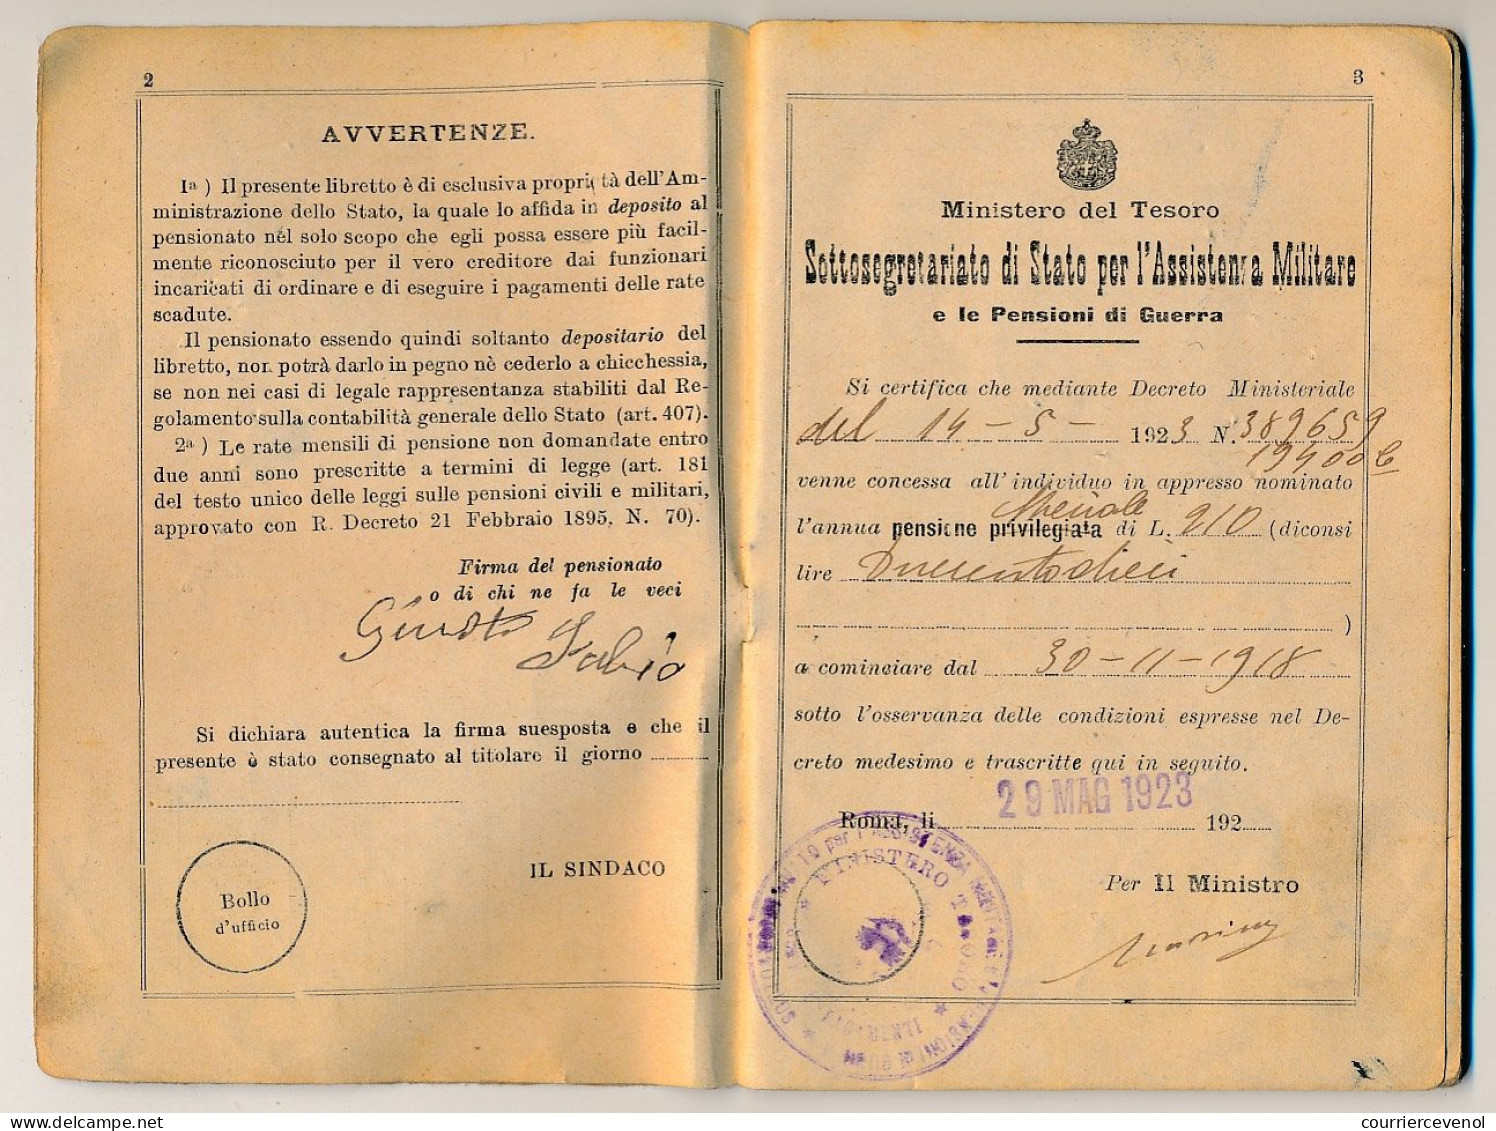 ITALIE - Passeport 1930 et Carnet de pensionné même époque - Cachet Consulat italien de Marseille